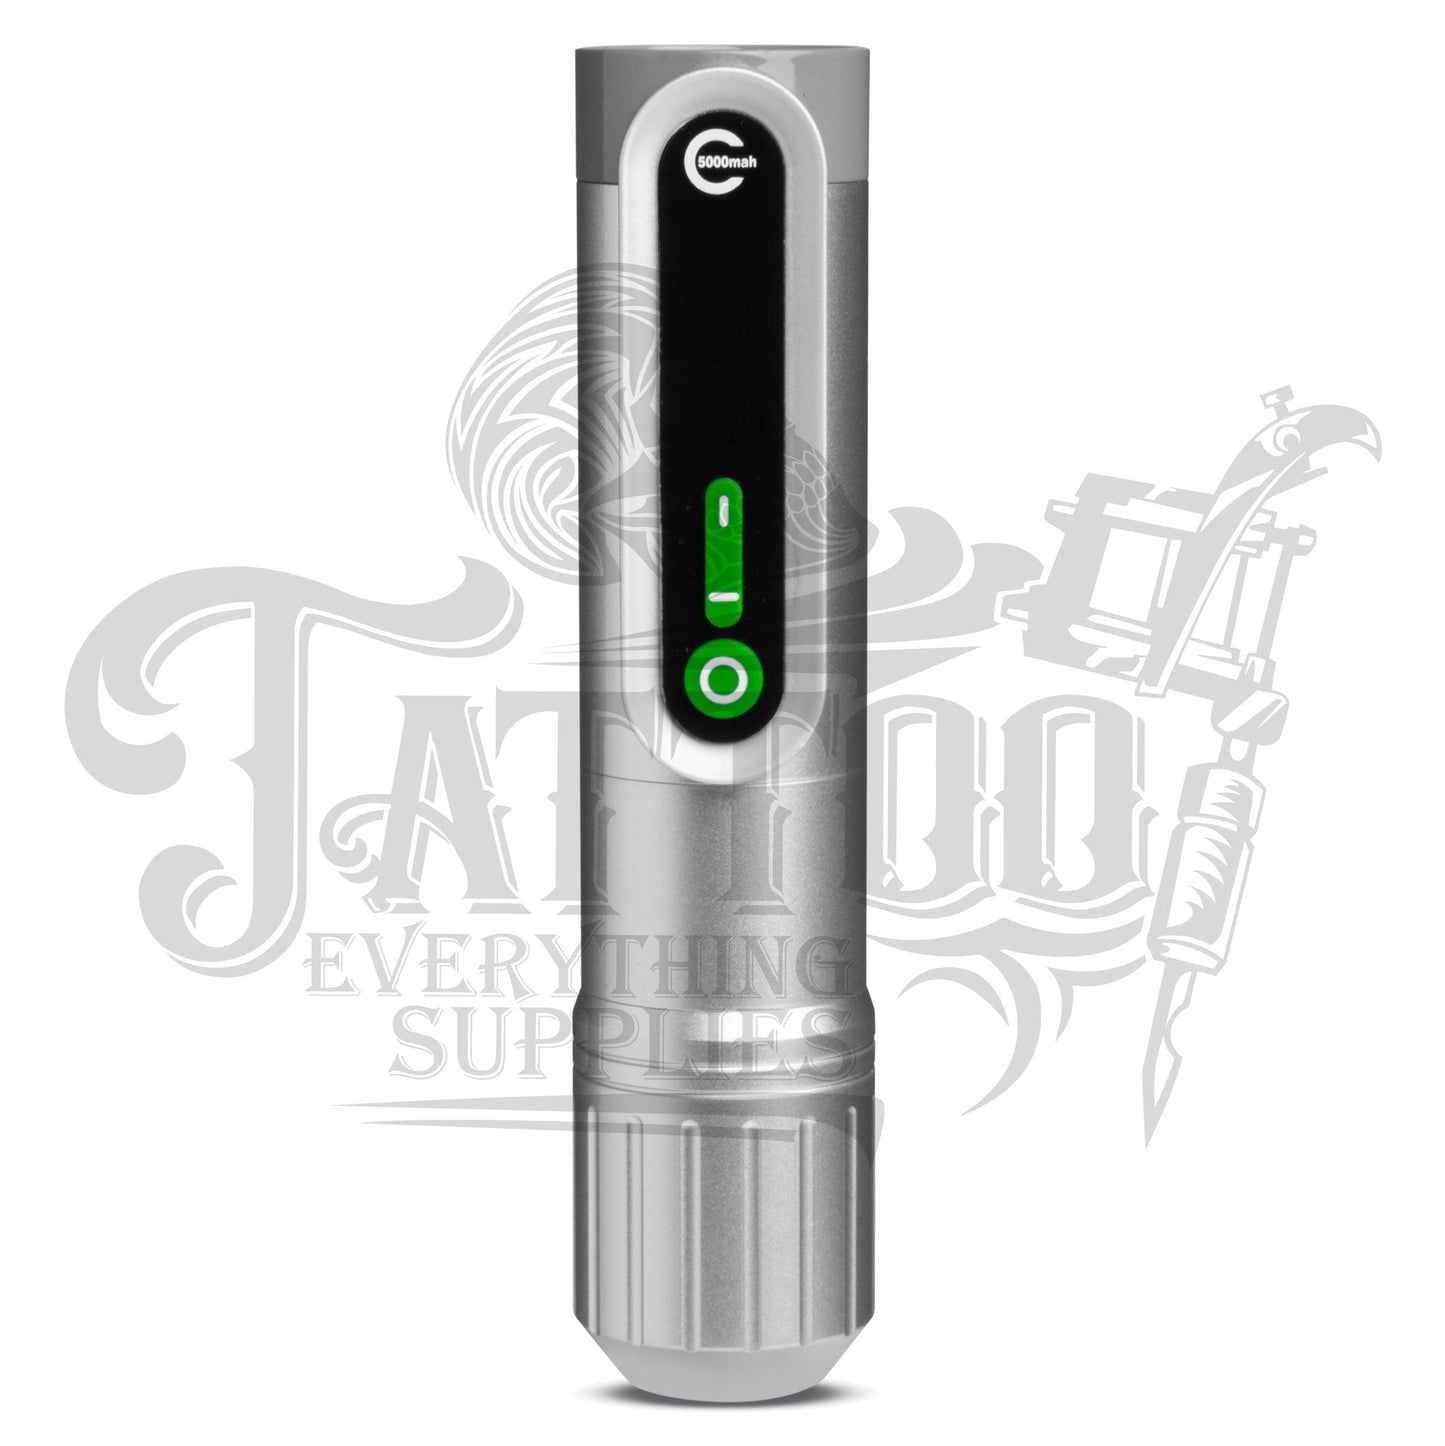 EZ P2 EPIC Wireless Tattoo Pen Machine 3.5mm - WAS £209.99 PLUS VAT - Tattoo Everything Supplies